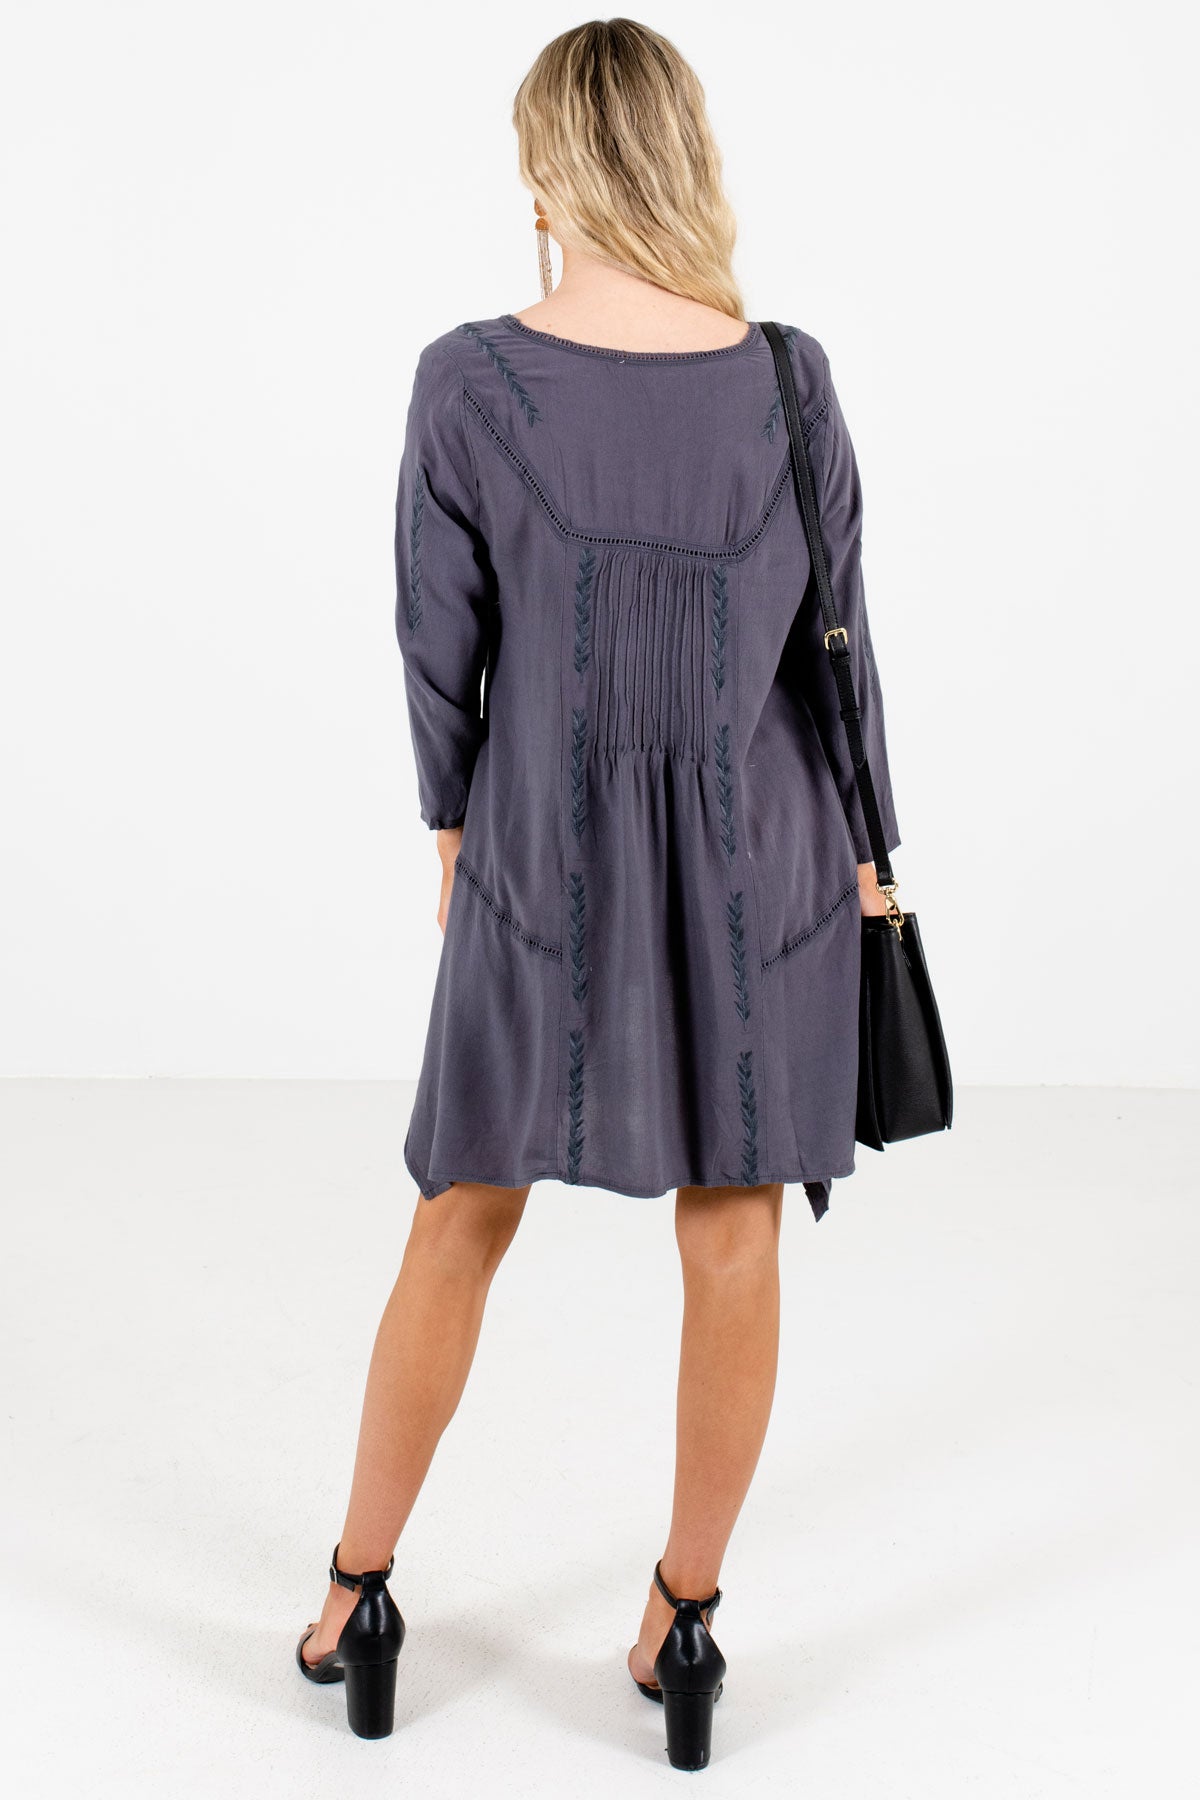 Women’s Charcoal Gray Asymmetrical Hem Boutique Mini Dress